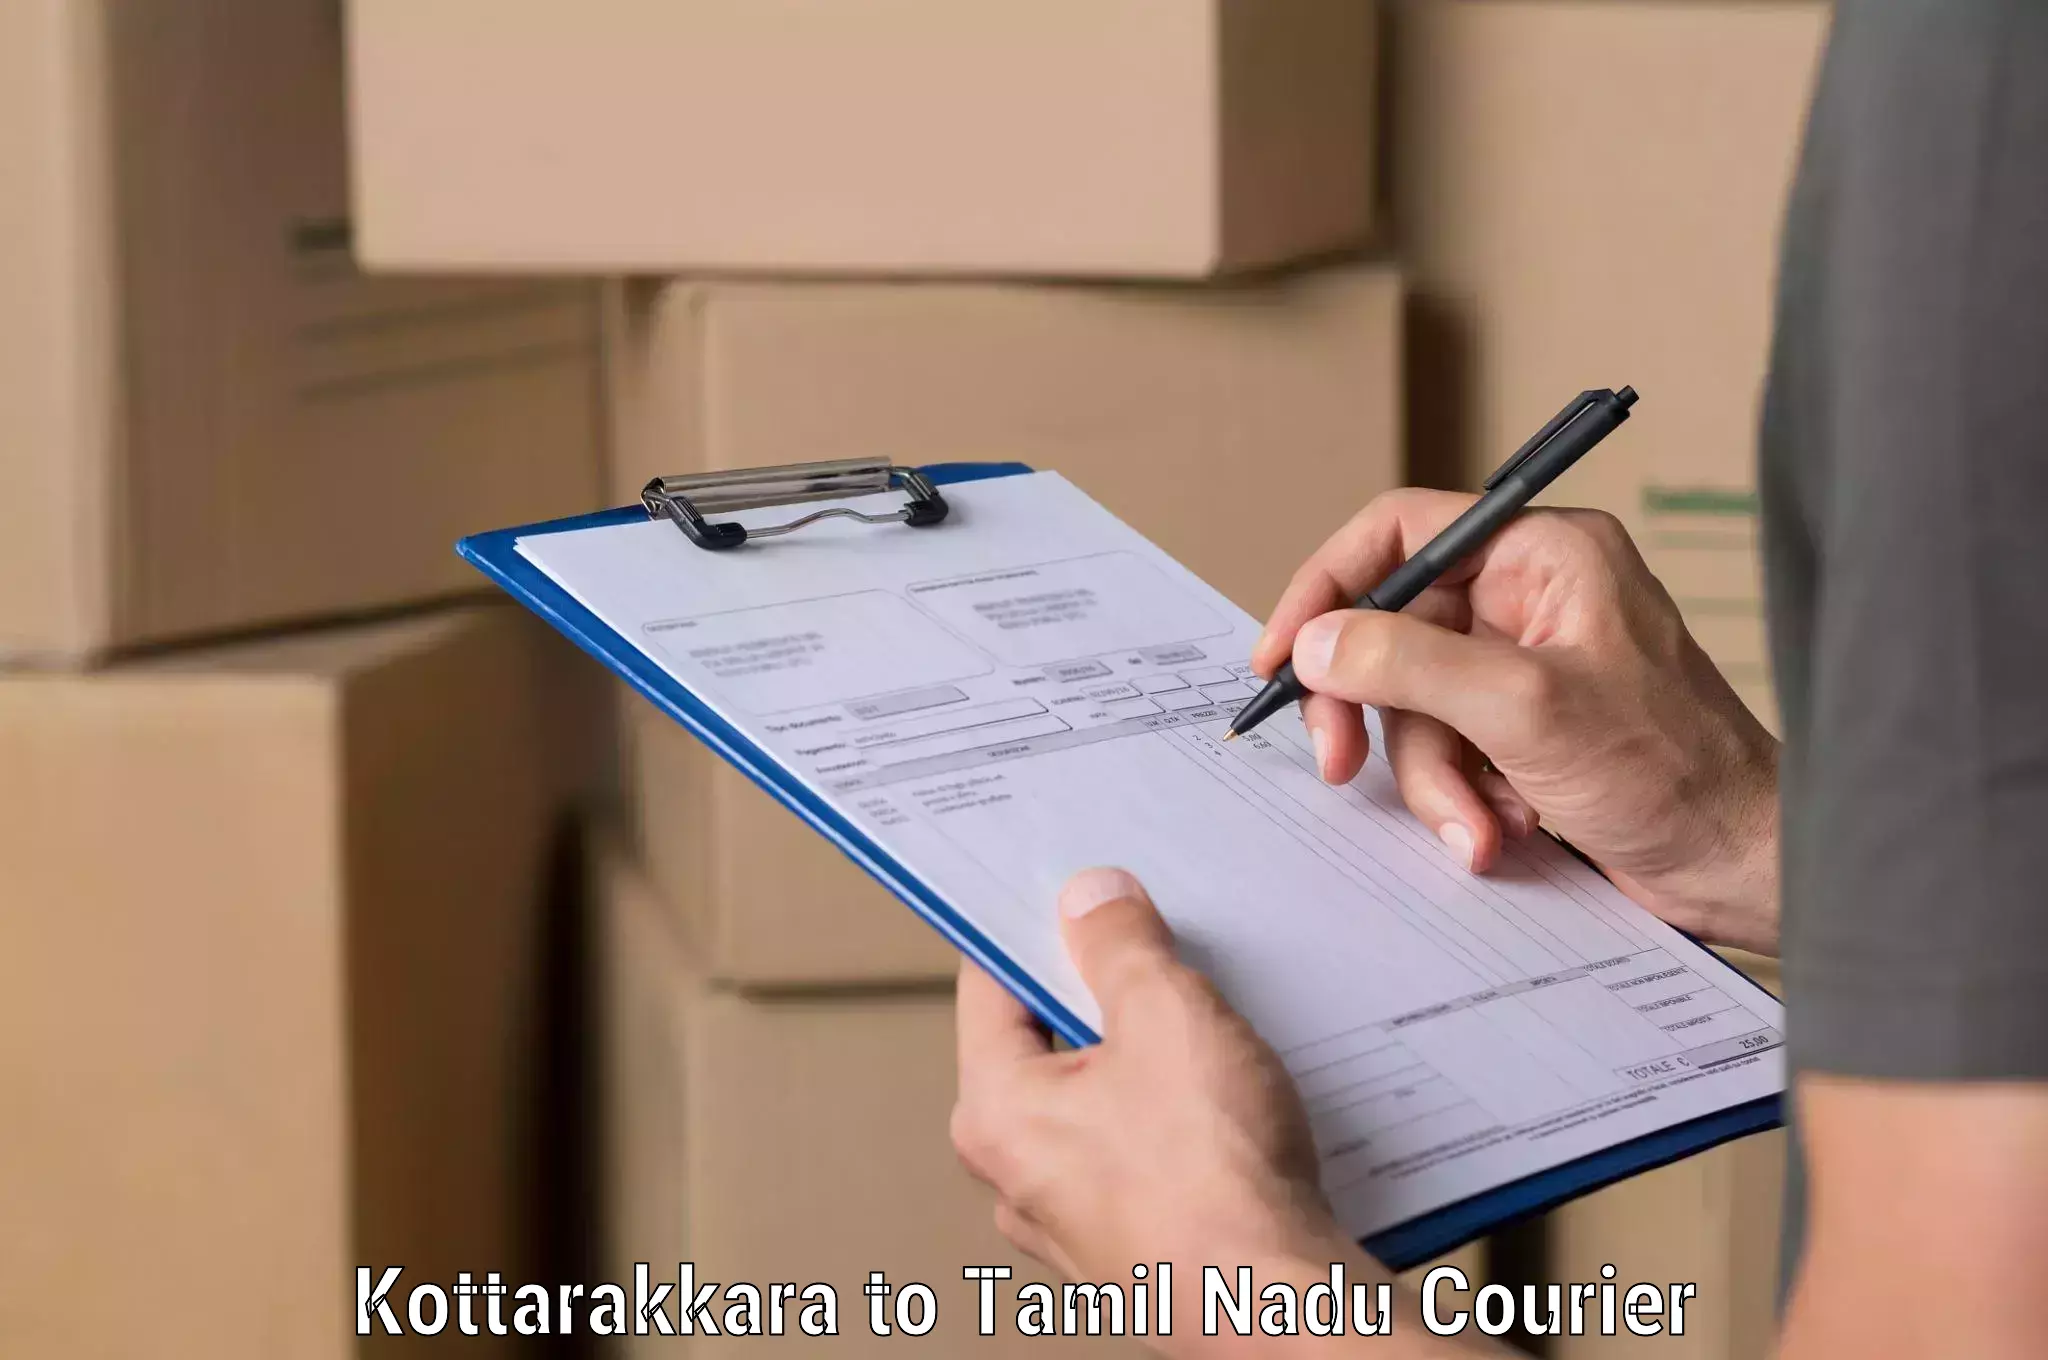 Multi-modal transportation Kottarakkara to Tamil Nadu